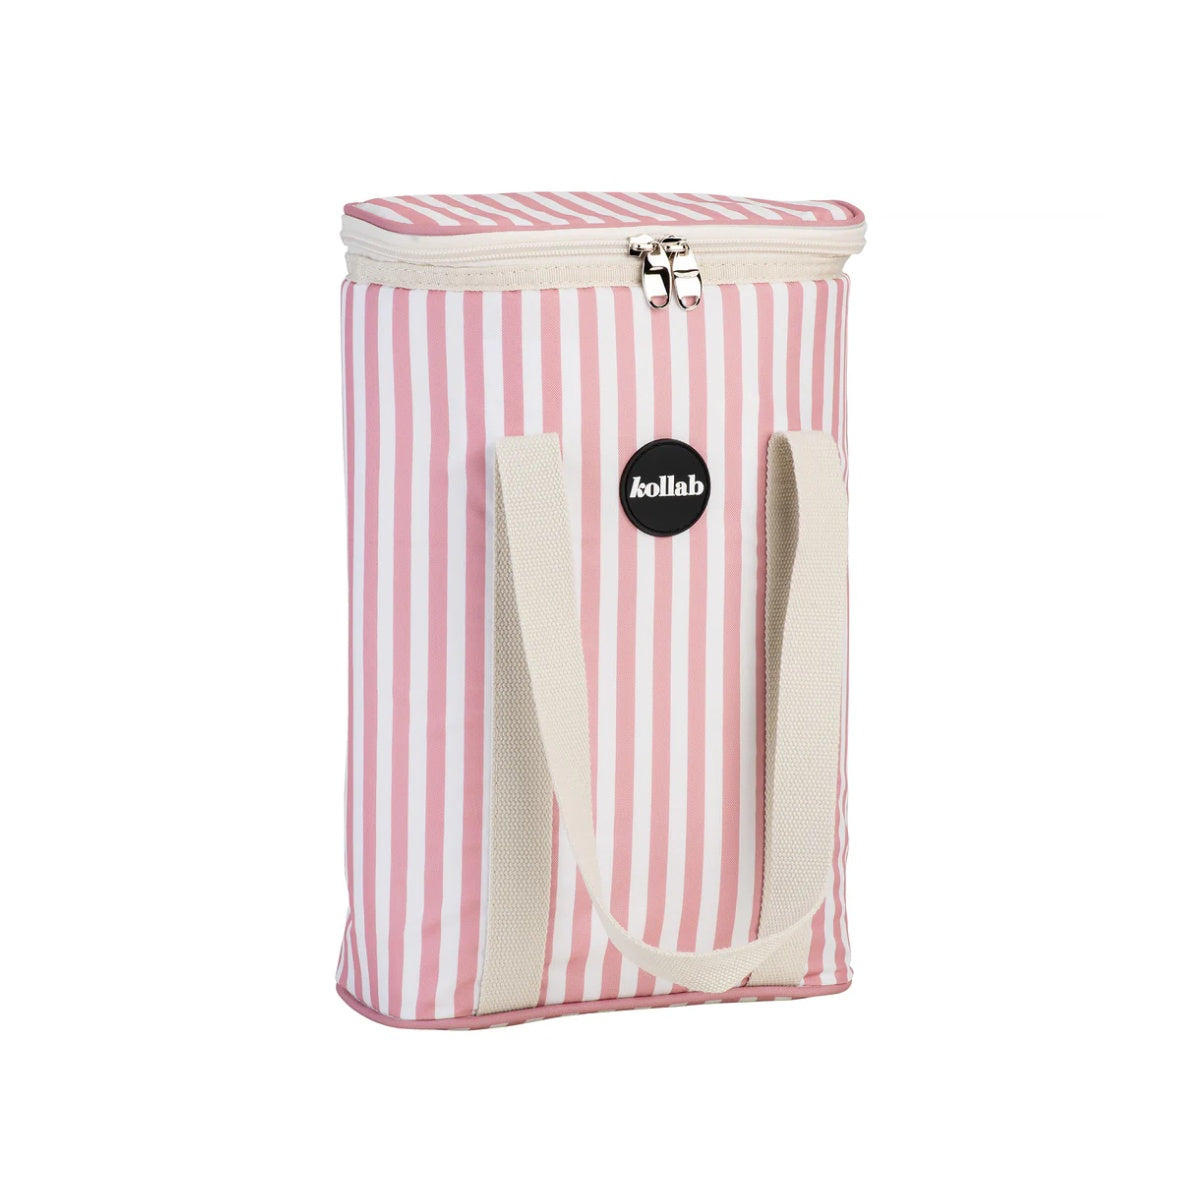 Kollab - Wine Cooler Bag Rose Stripe